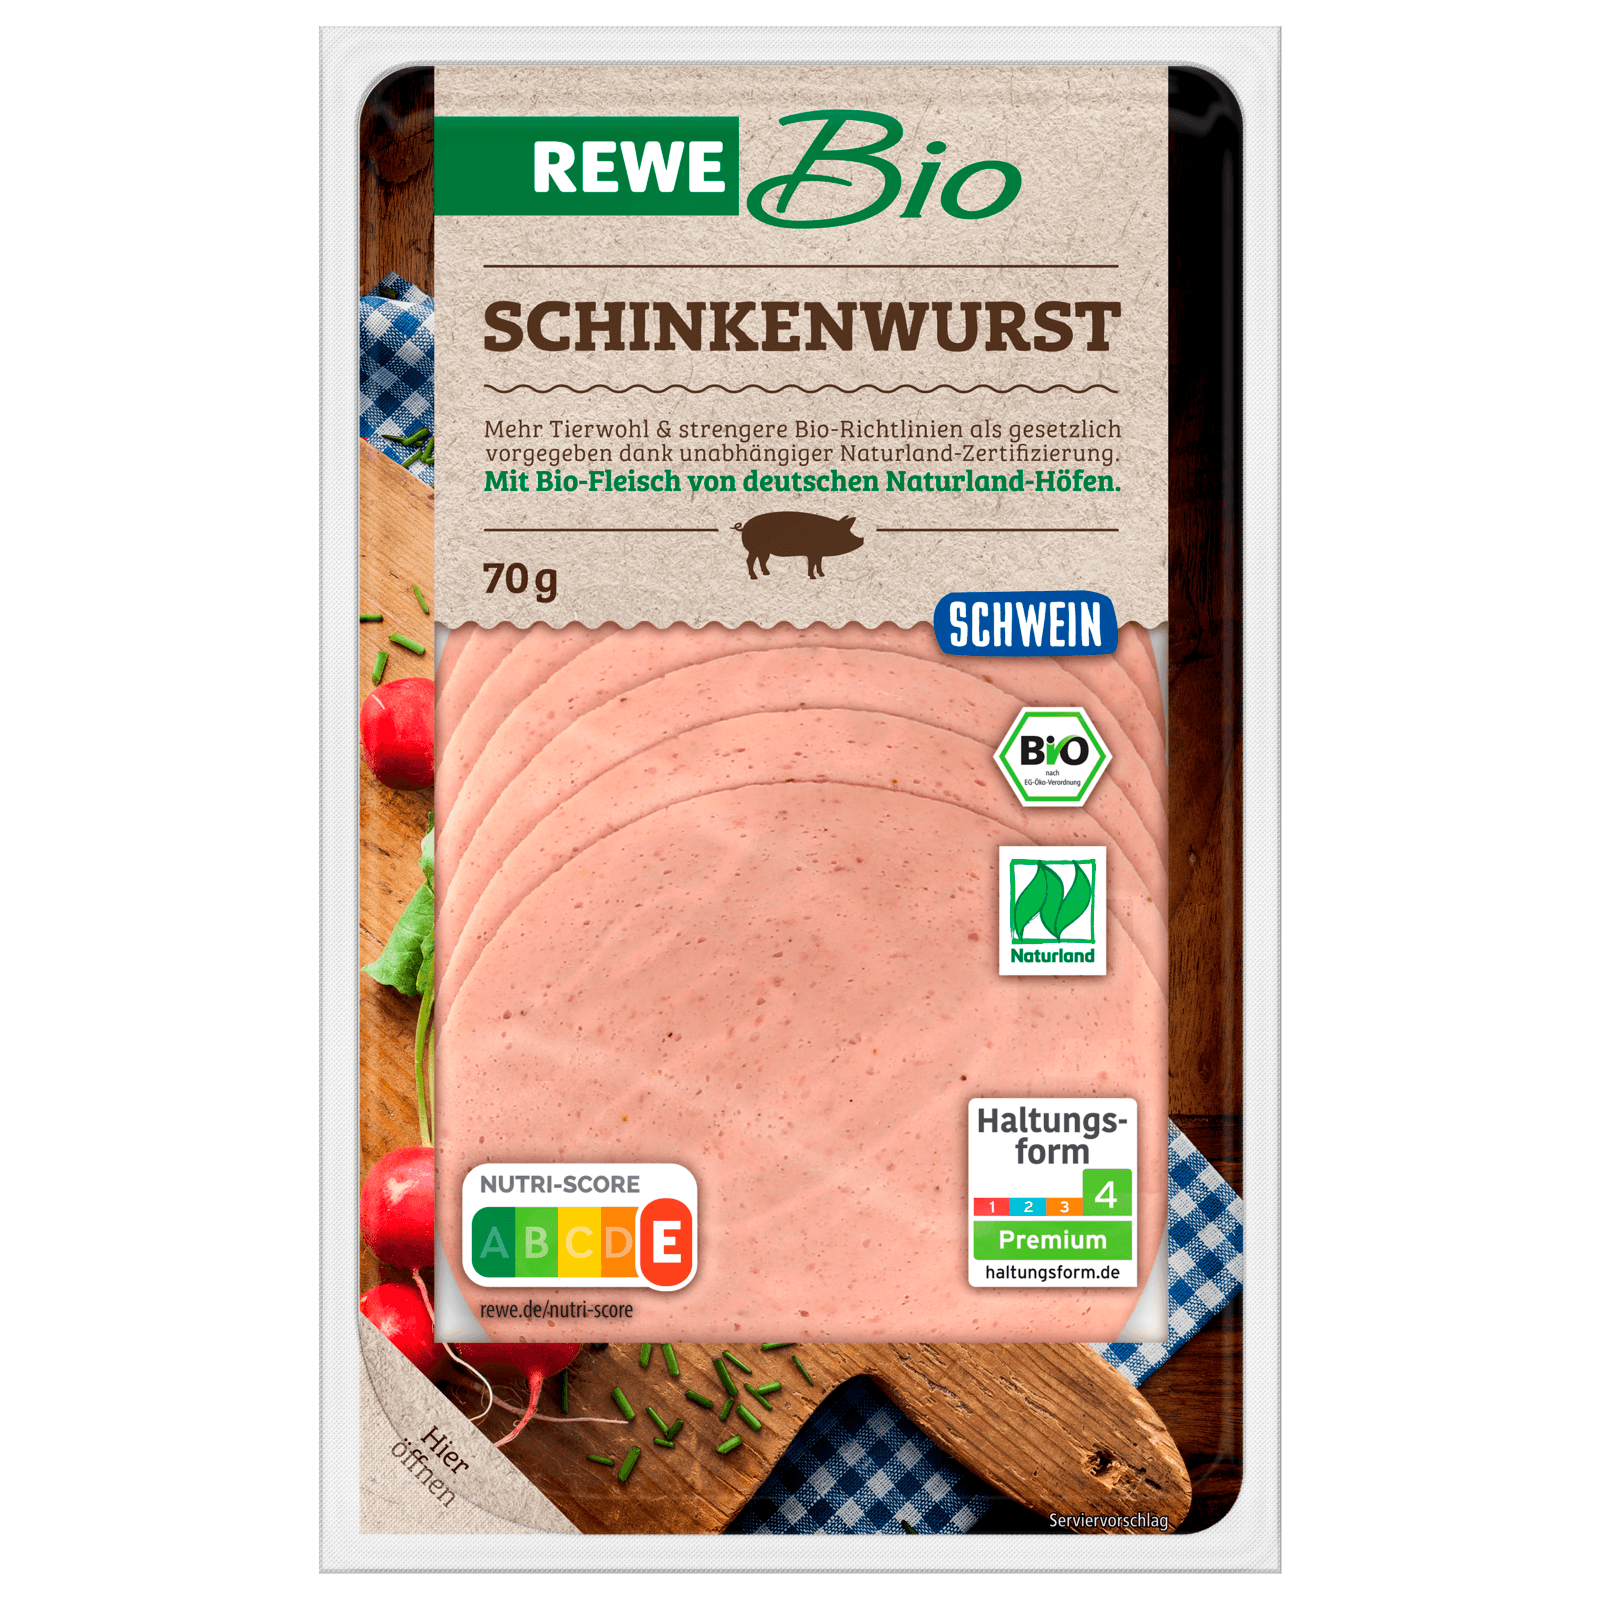 REWE Bio Schinkenwurst 70g